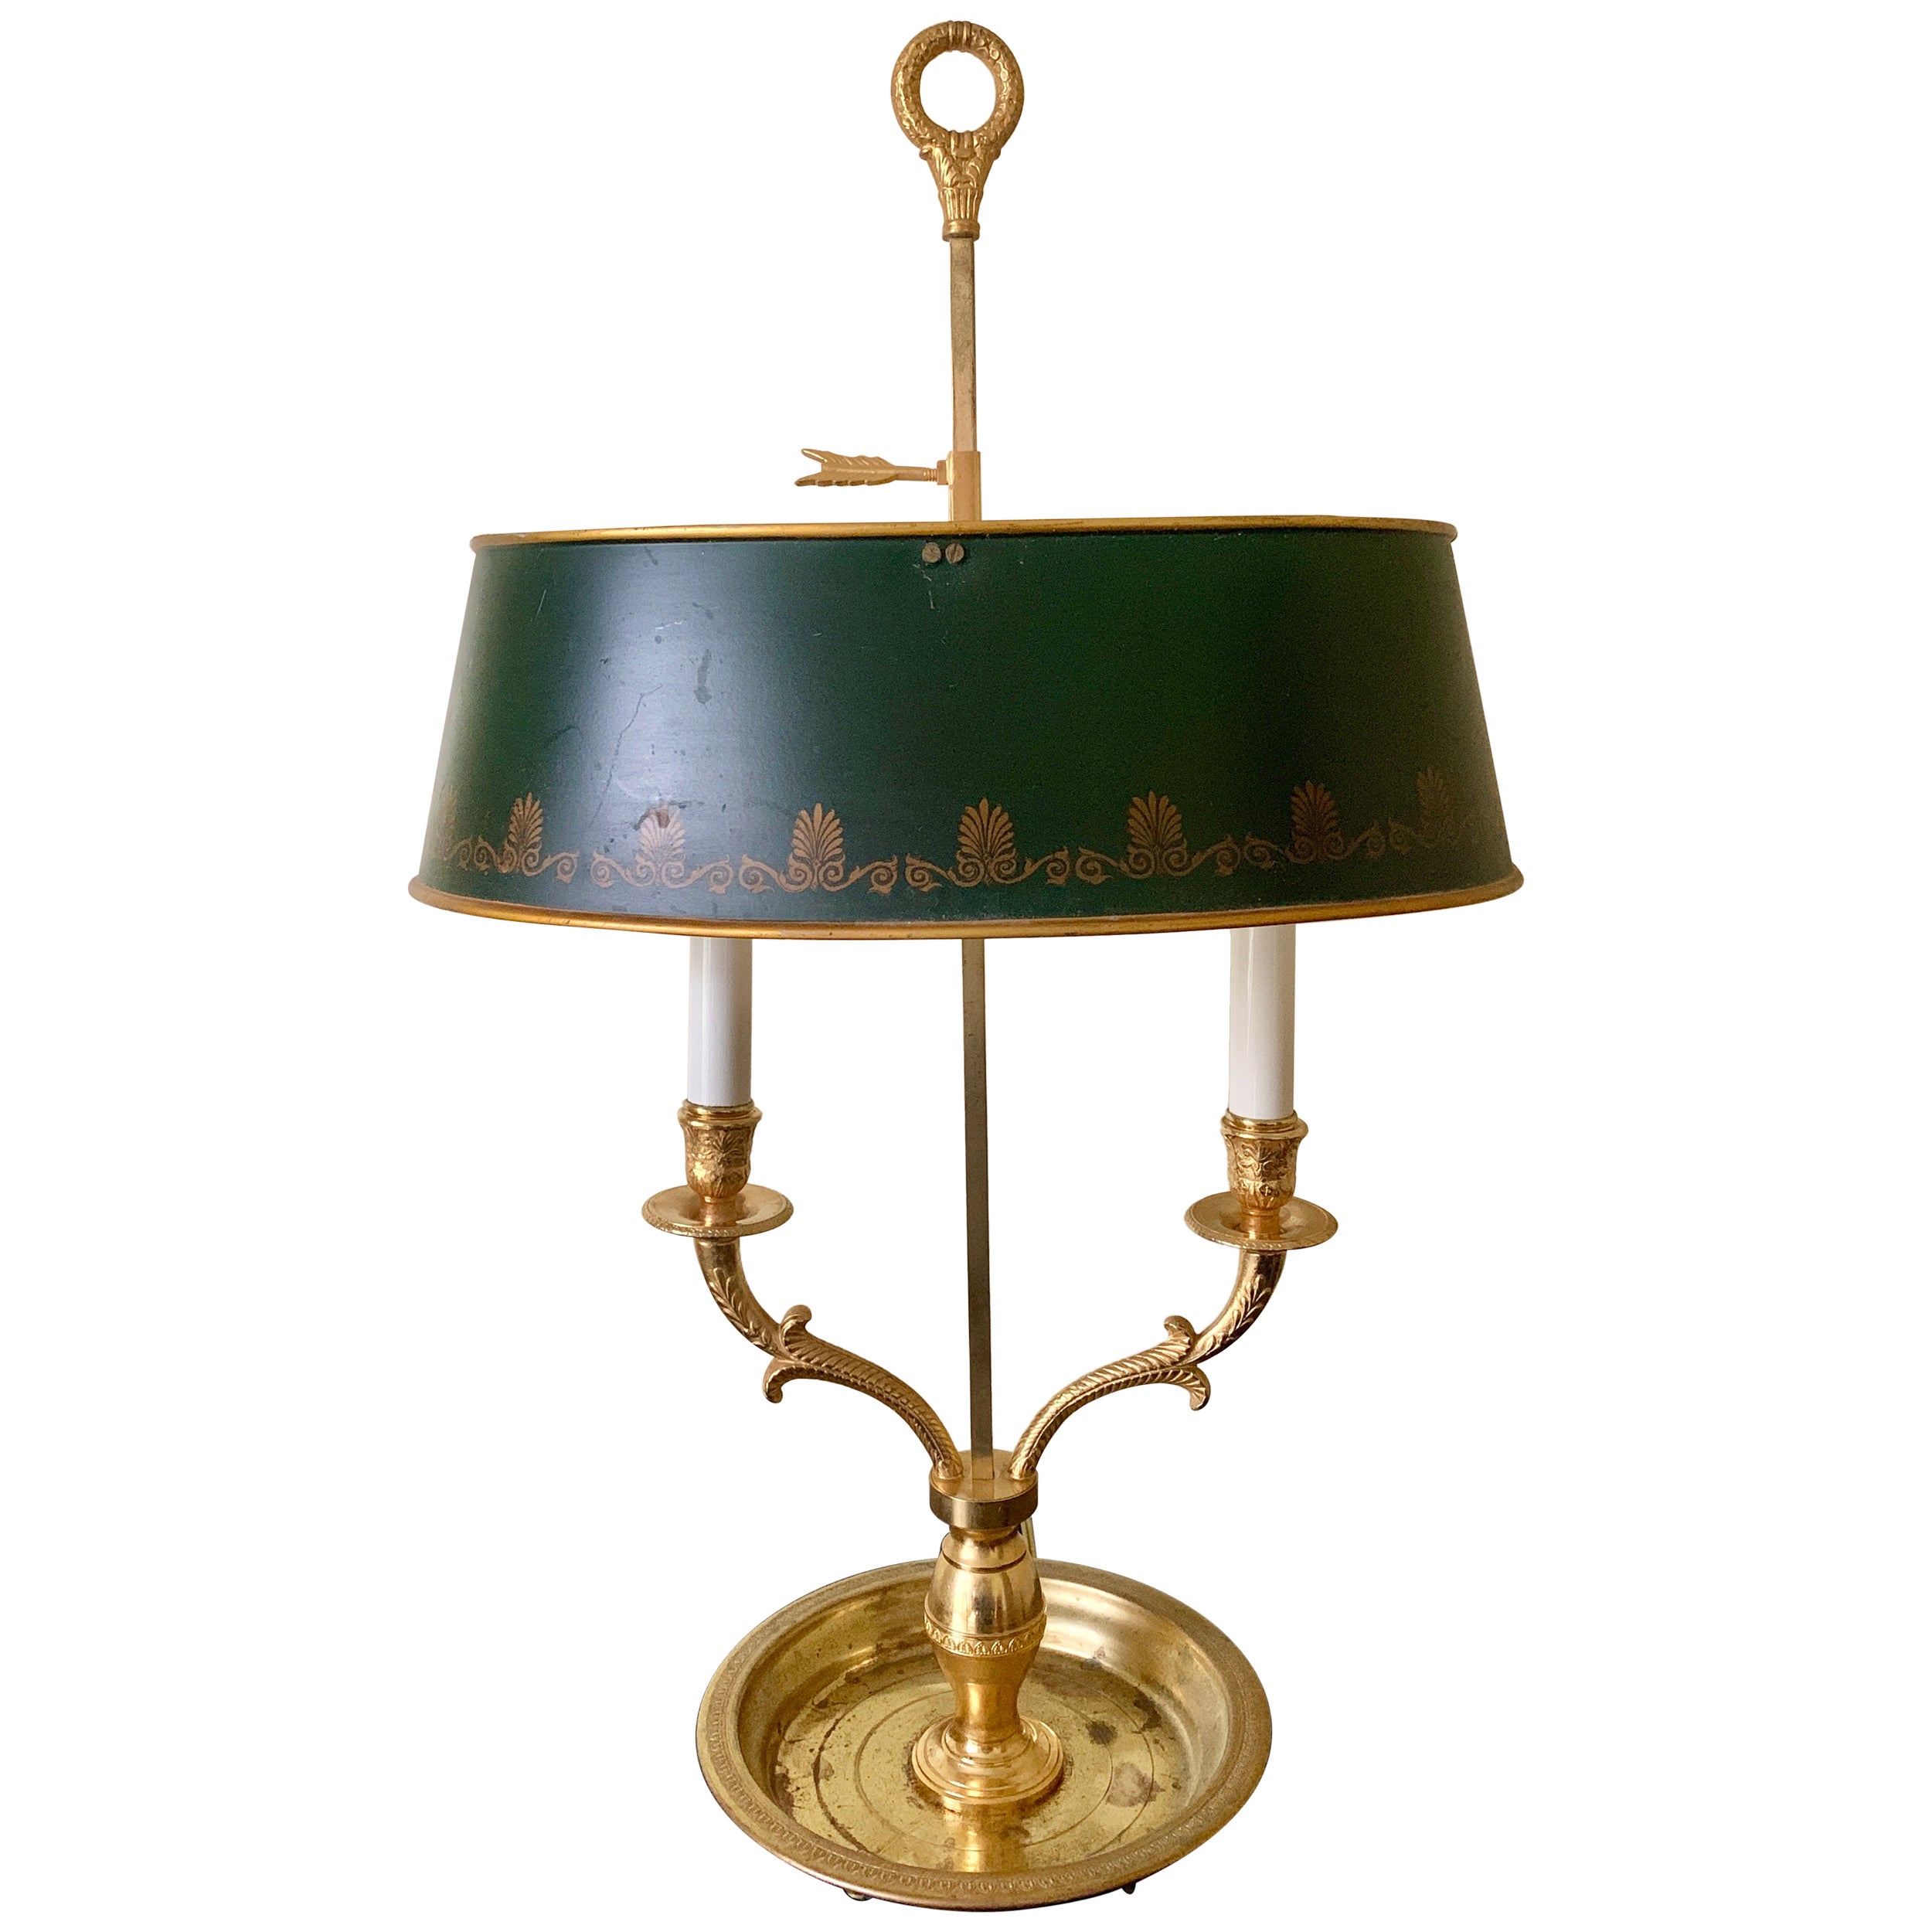 Bouillotte-Lampe aus Messing im französischen Provinzial-Stil mit schabloniertem grünem Zinnschirm